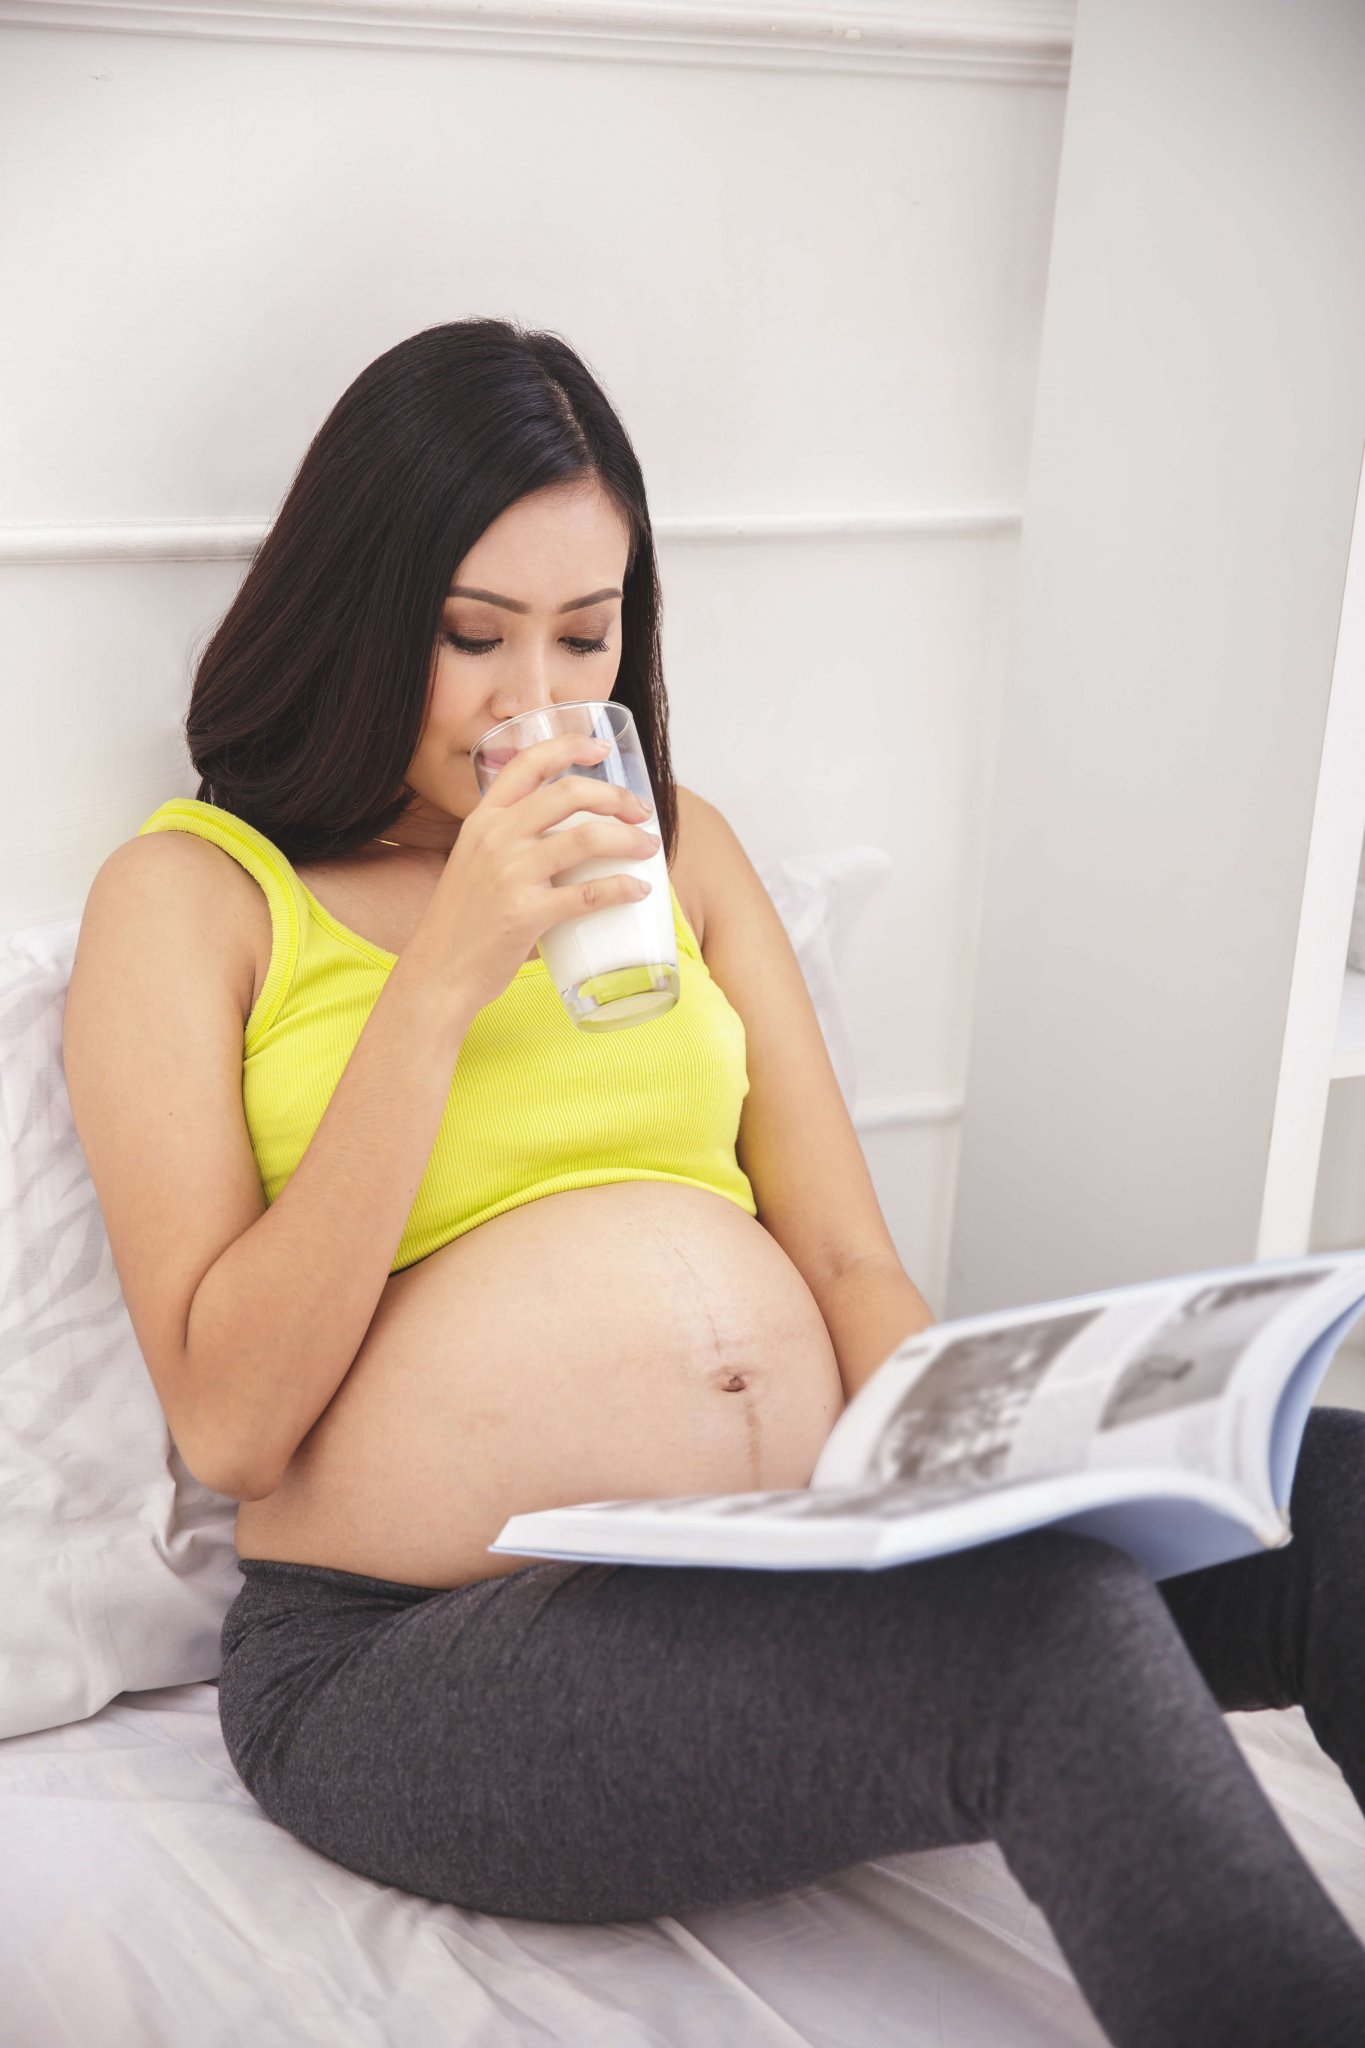 Uống đủ 2 ly sữa cho bà bầu mồi ngày để phòng ngừa suy dinh dưỡng bào thai mẹ nhé!